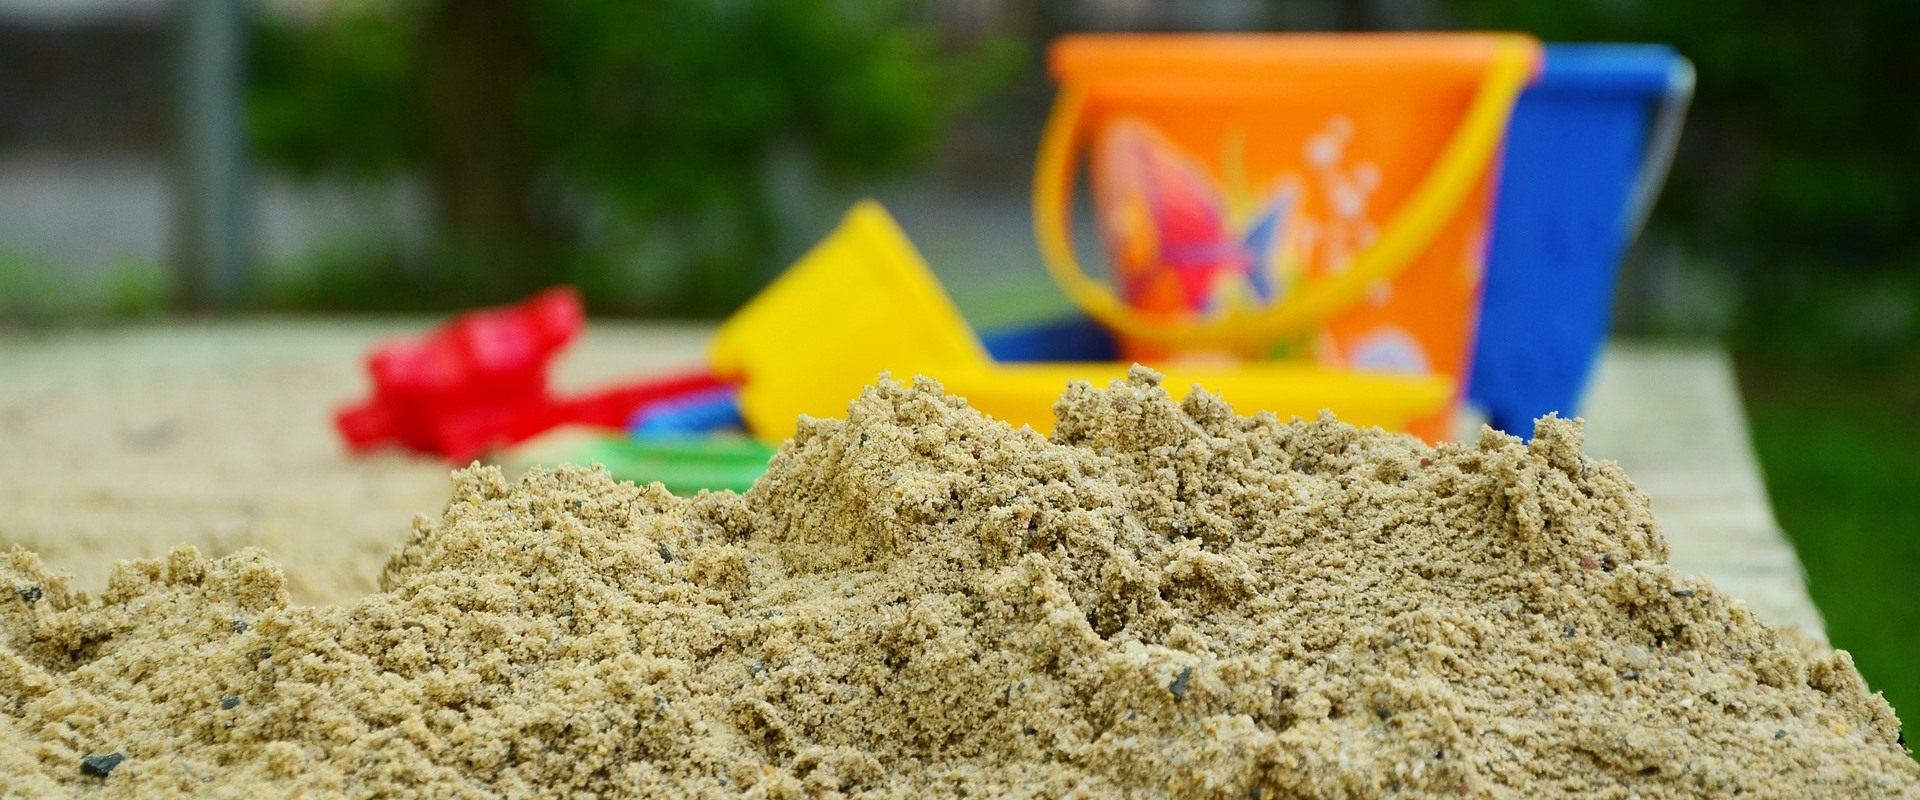 Detailaufnahme von einem Sandkasten mit Sandspielzeug